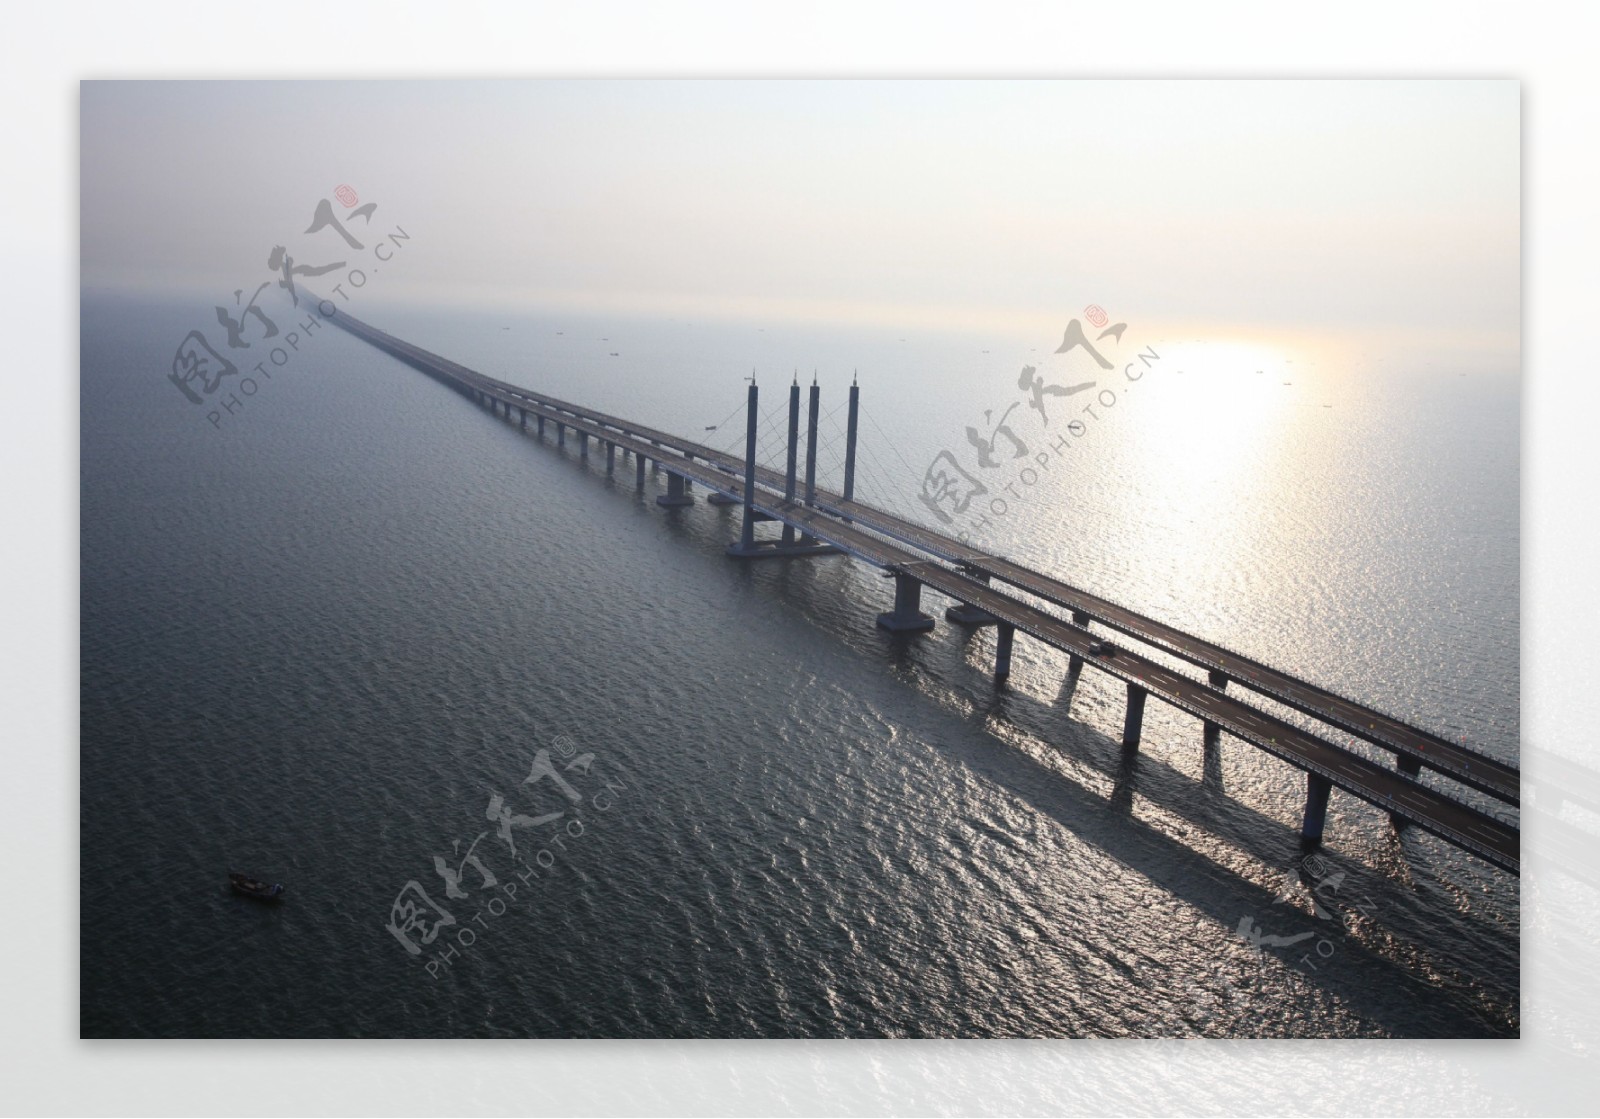 杭州湾跨海大桥俯瞰图片